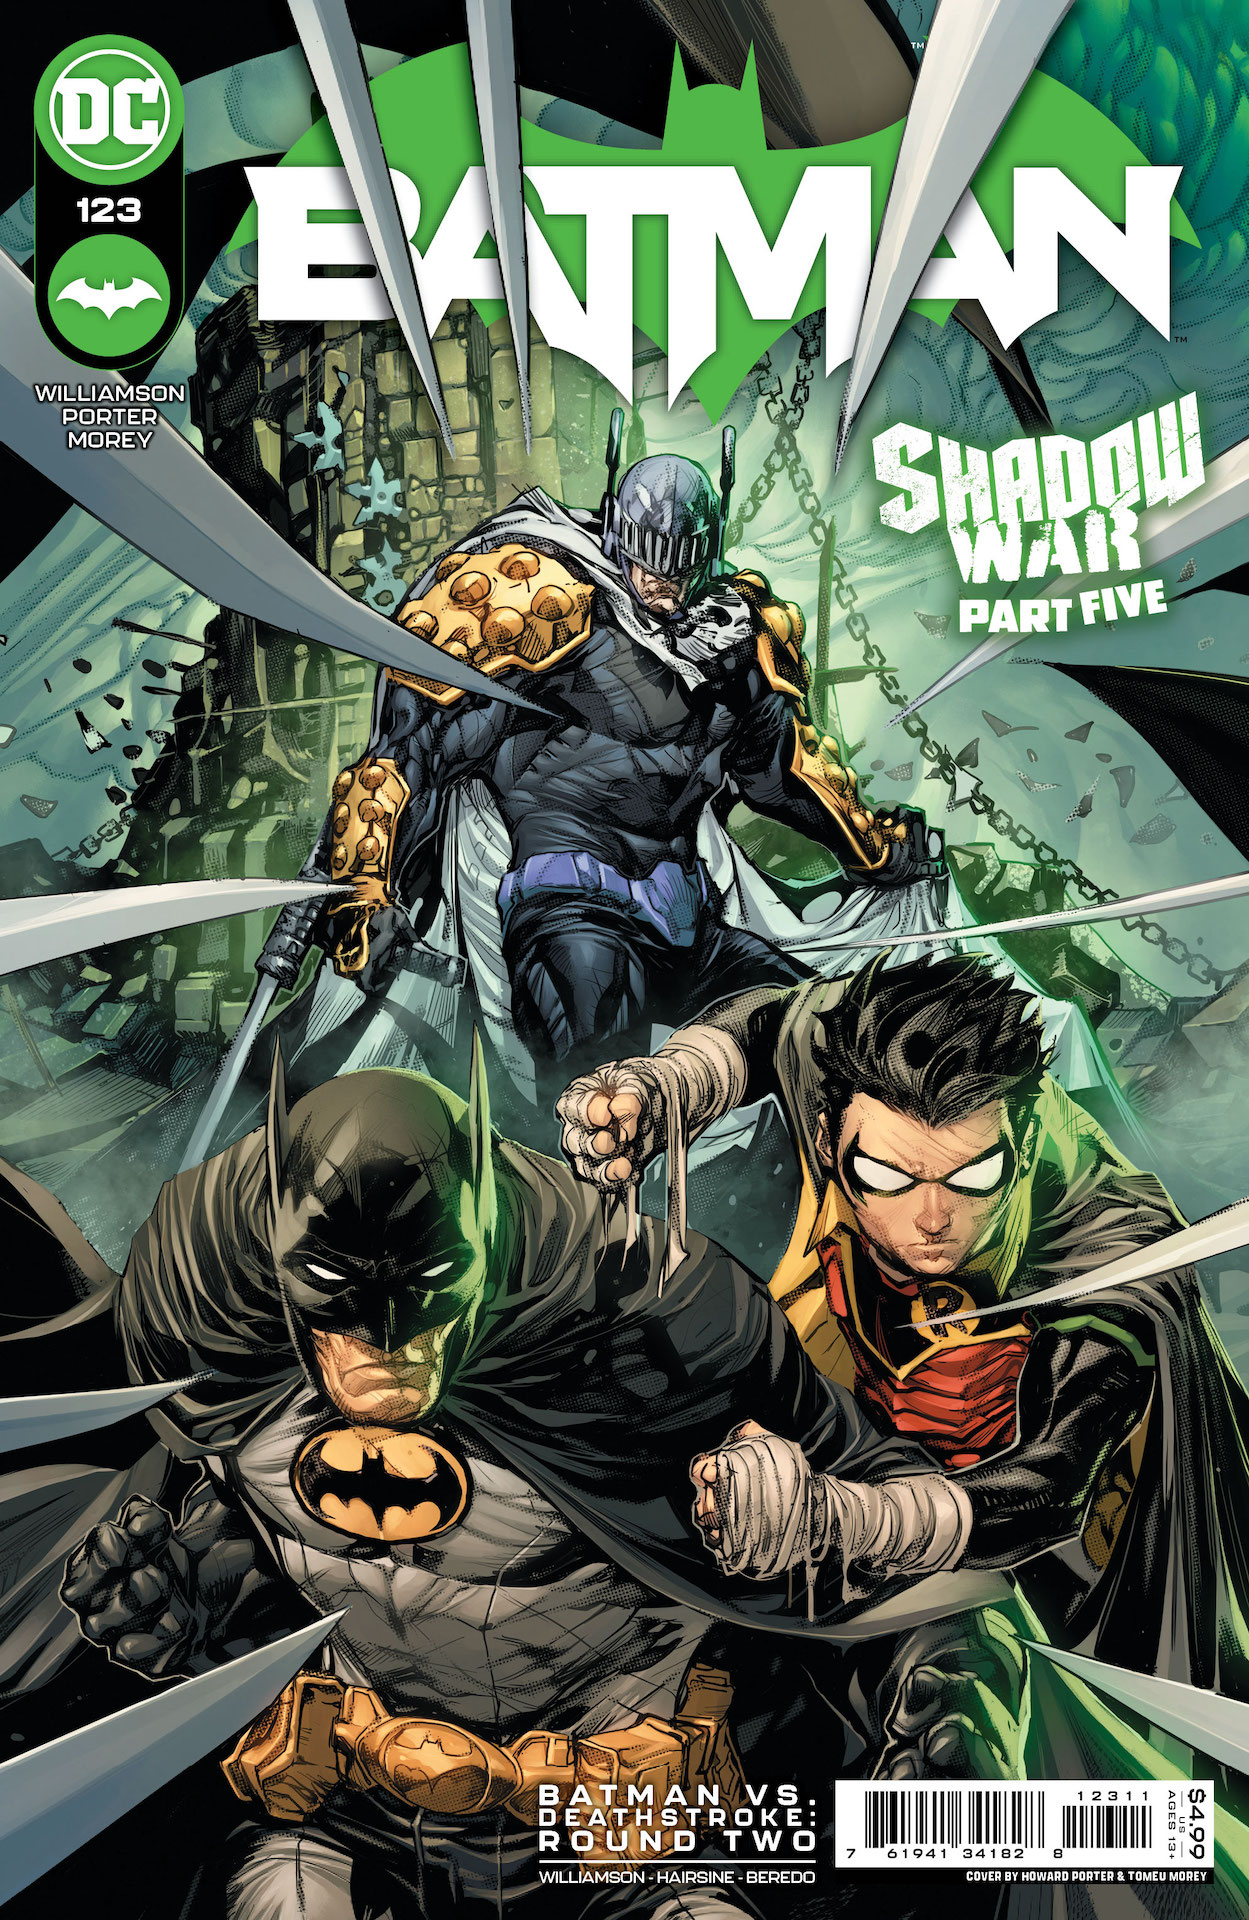 DC Preview: Batman #123